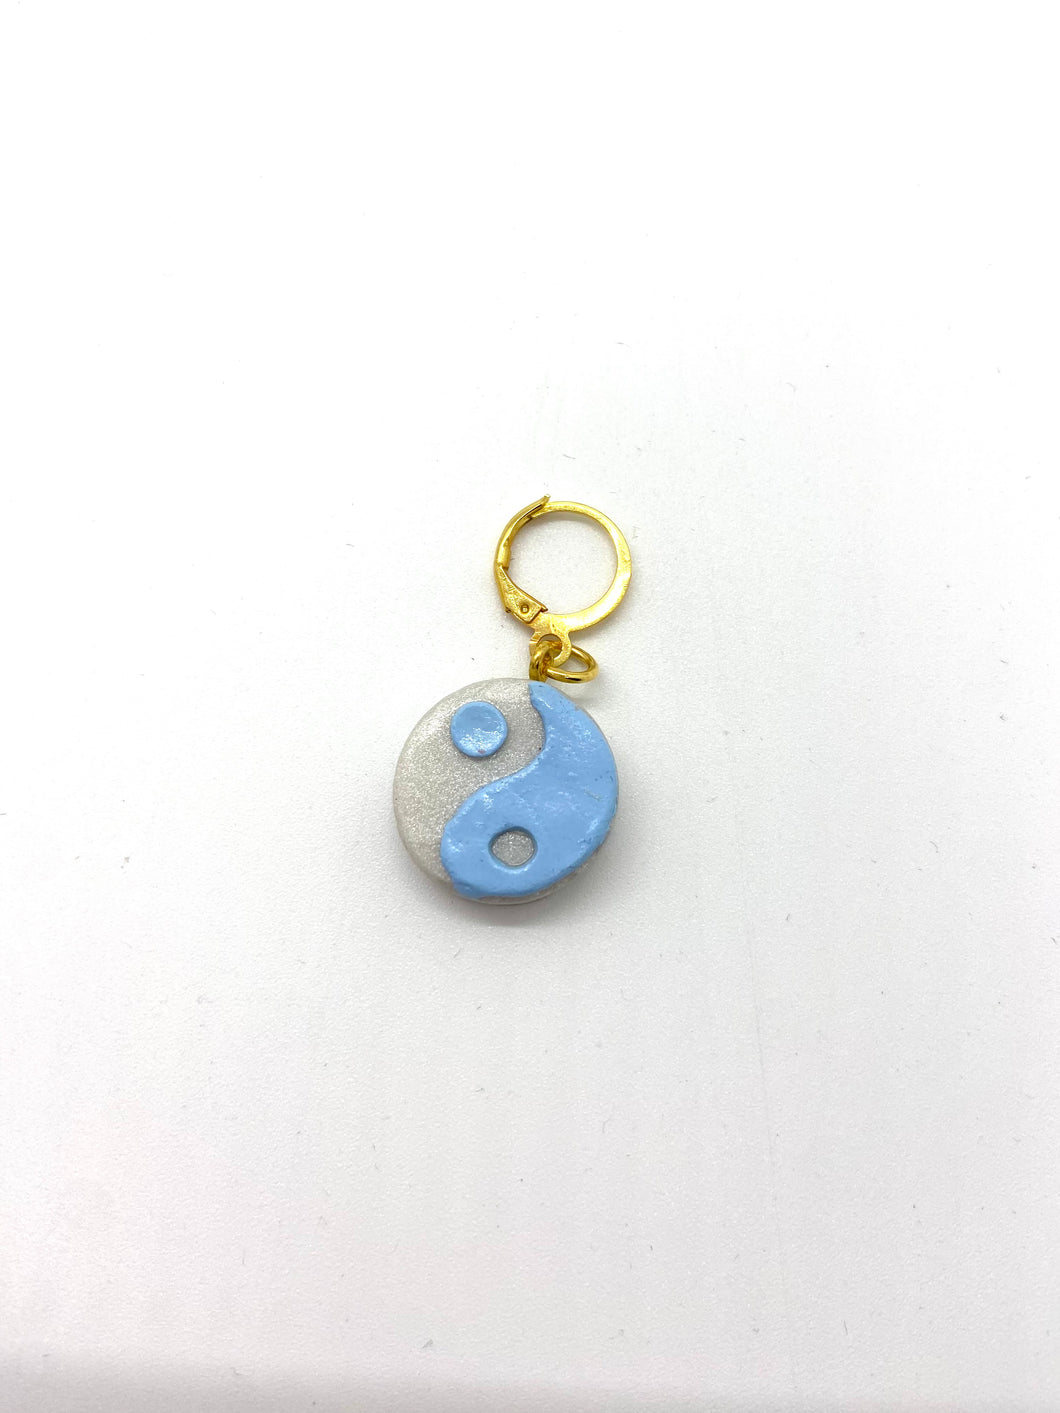 yin yang charm earring- baby blue